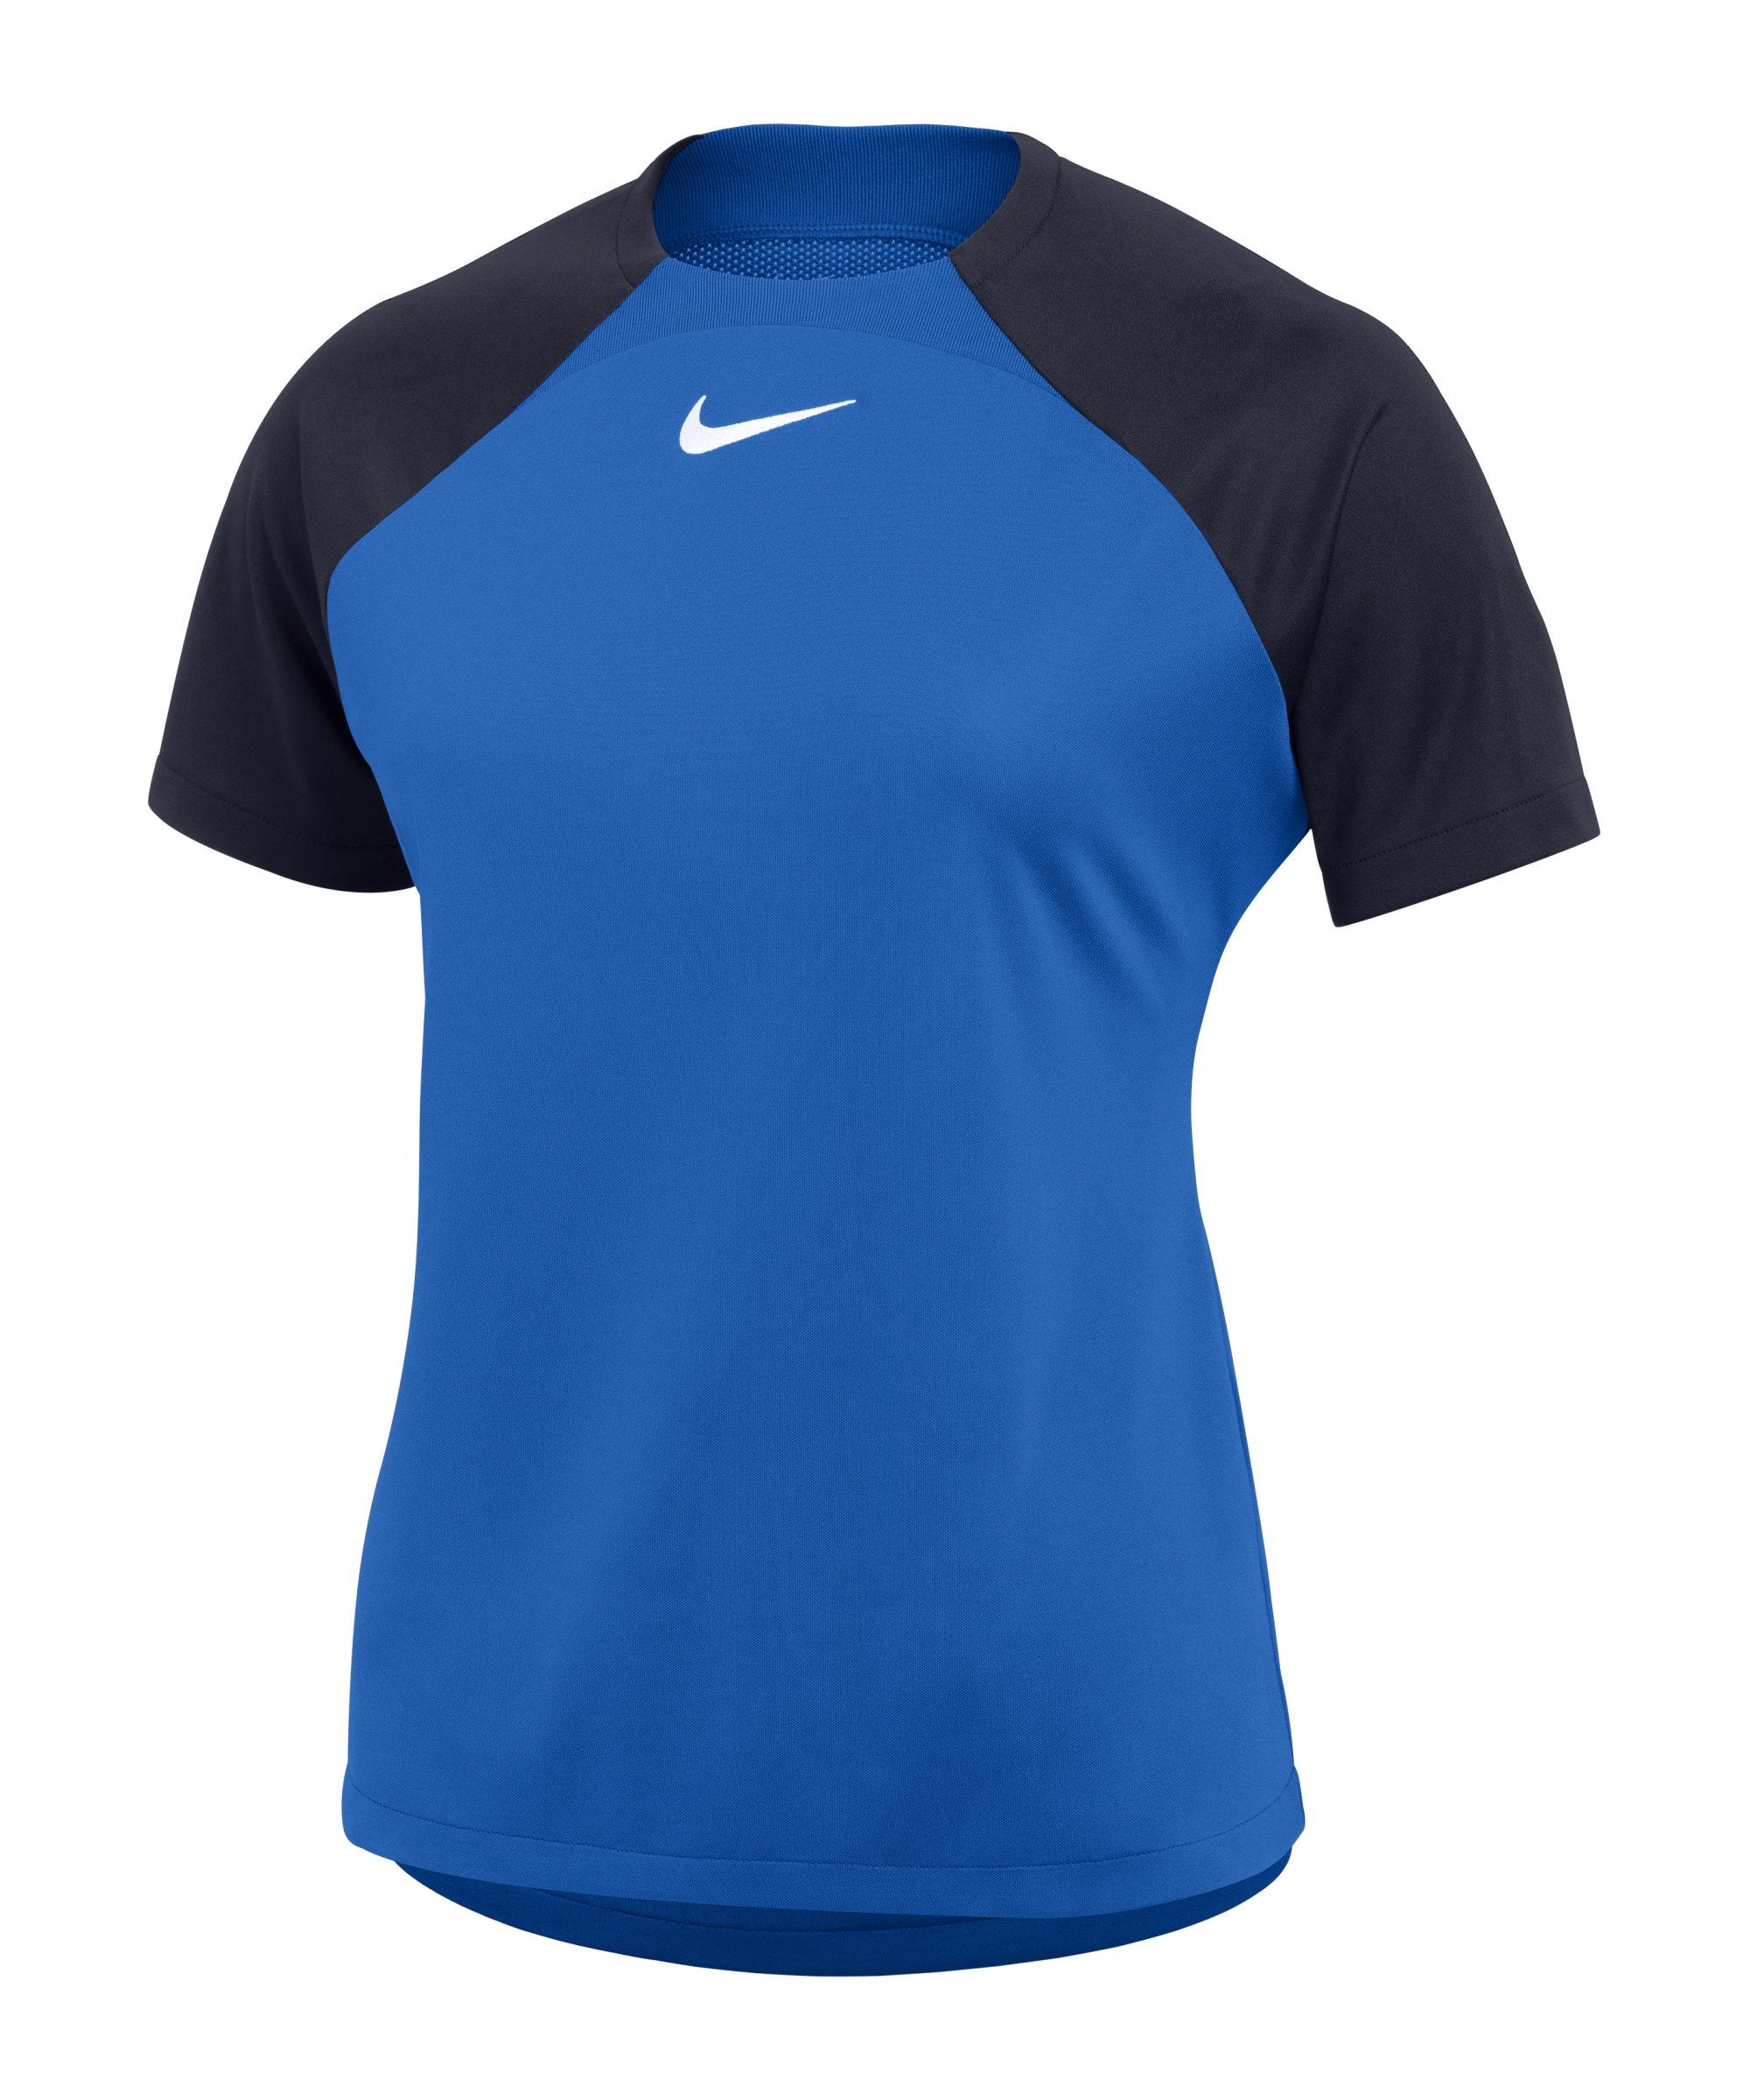 Nike Academy Pro Trainingsshirt Damen Blau Weiss F463 - blau